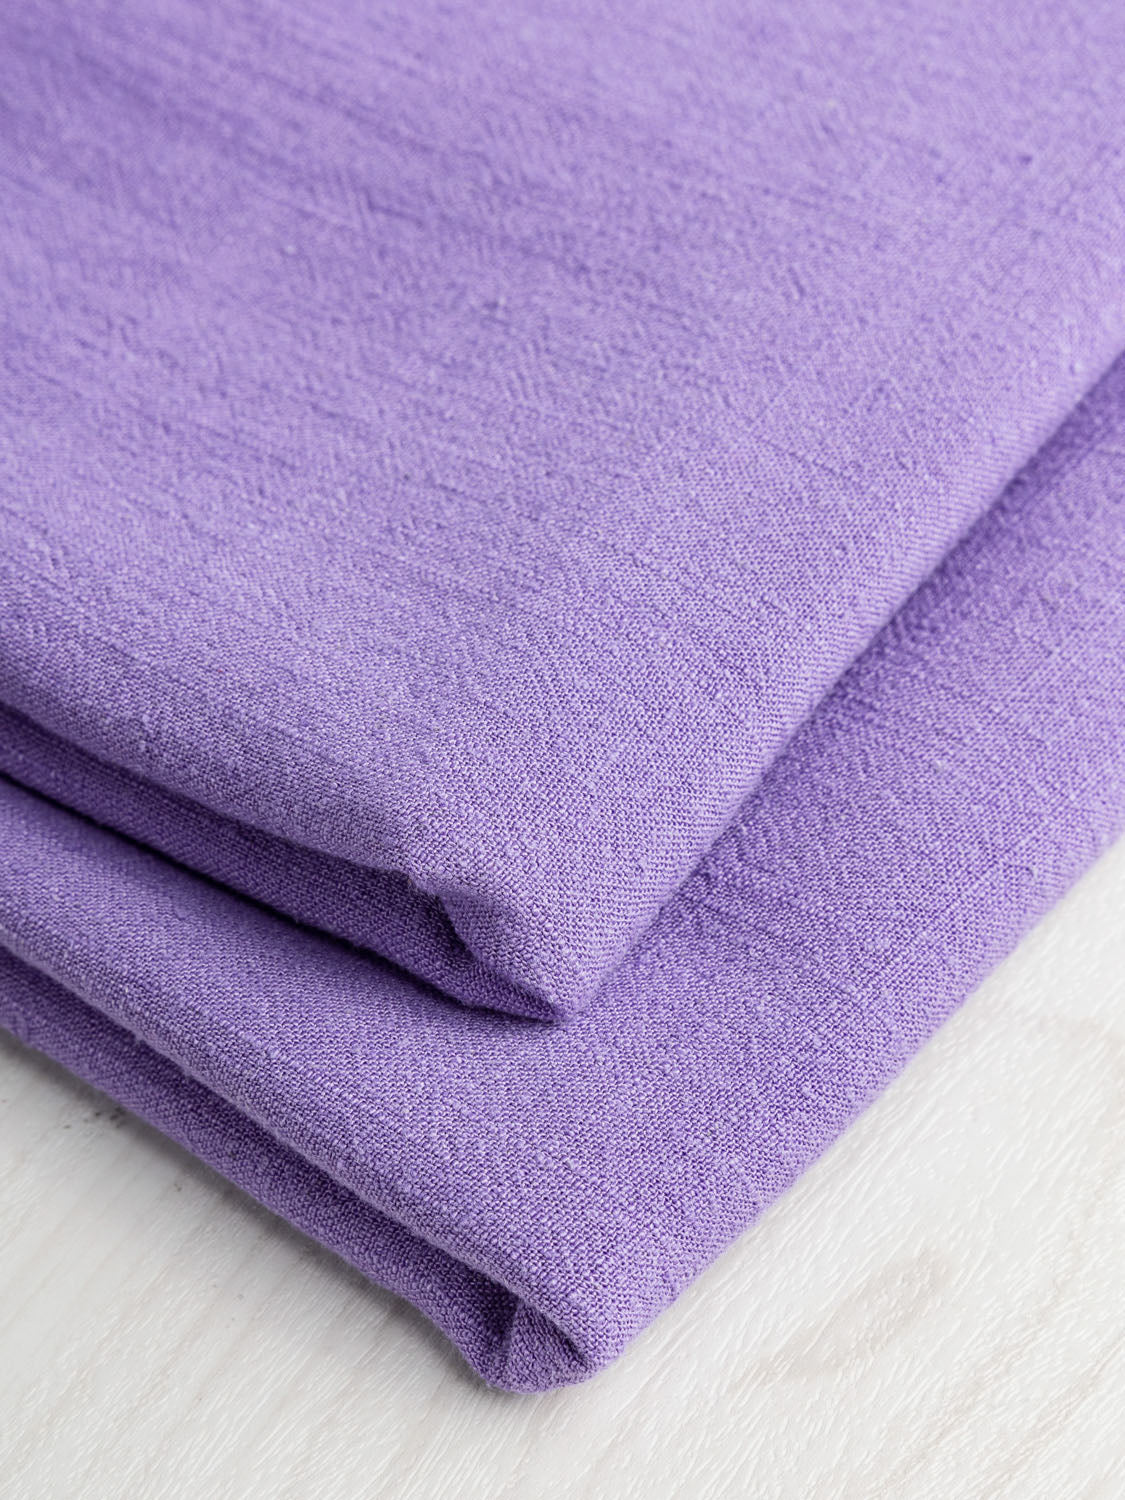 Textured Viscose Linen - Violet | Core Fabrics